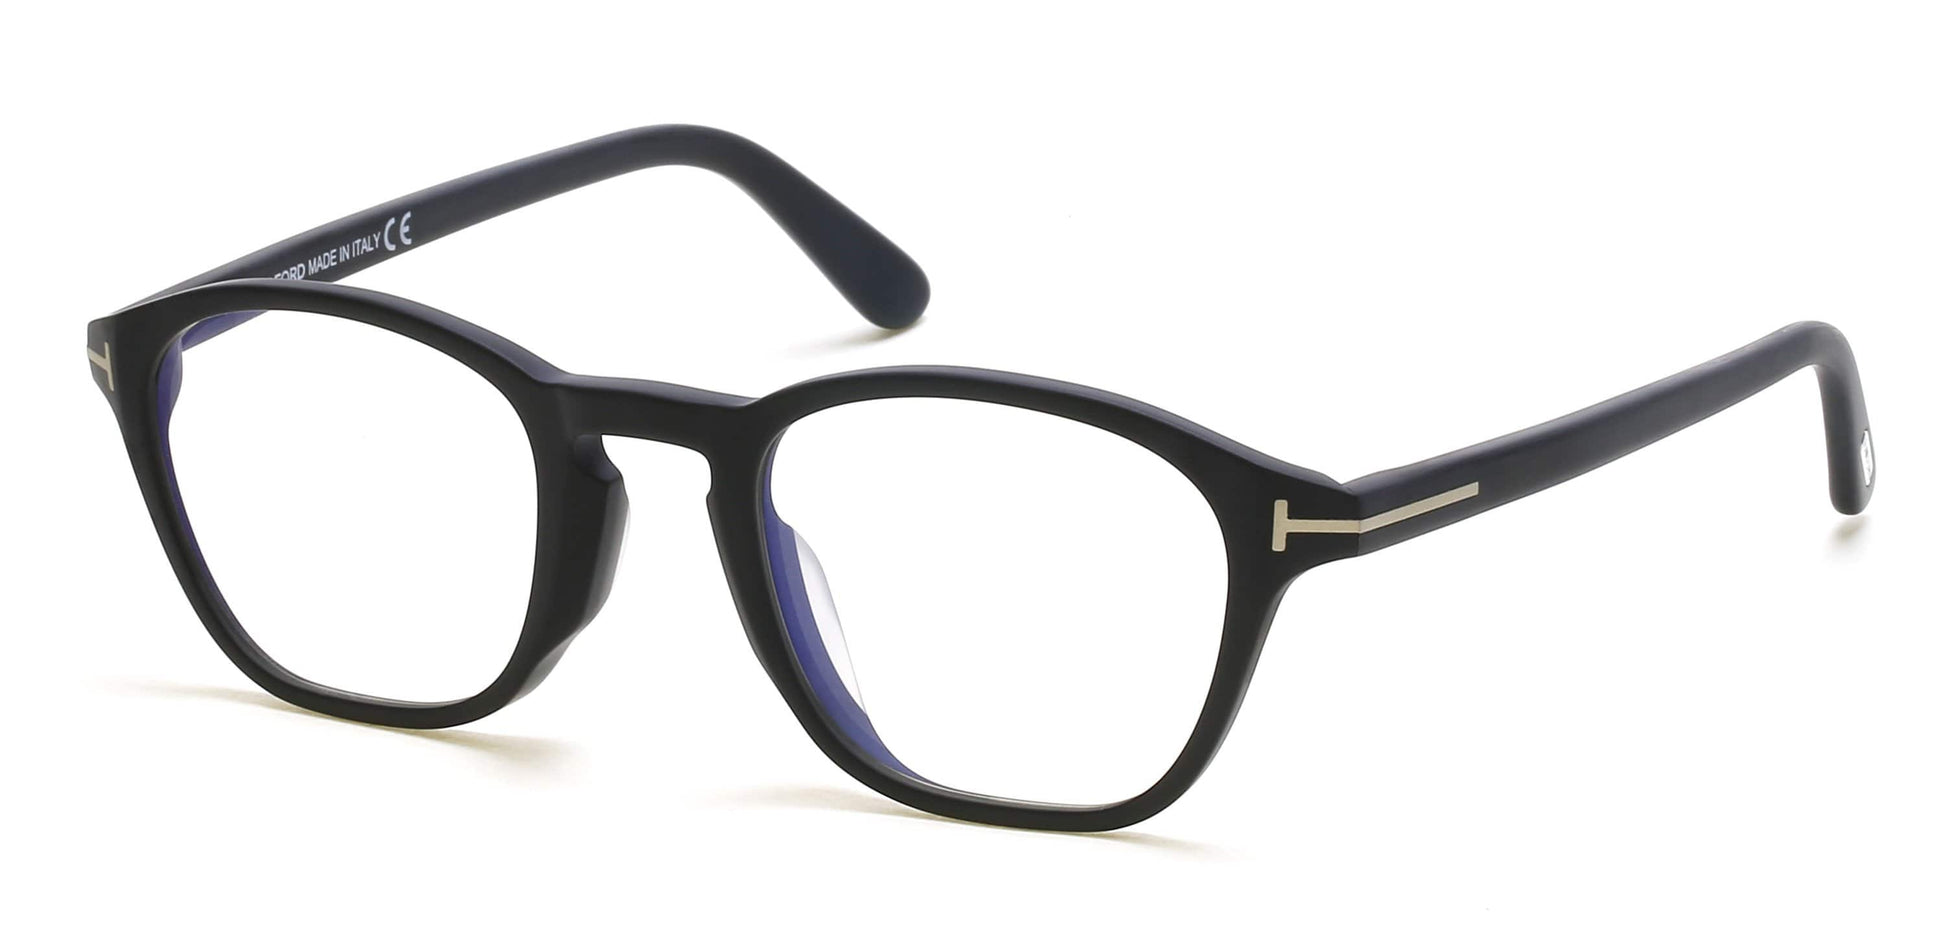 Tom Ford FT5591-D-B Geometric Eyeglasses 002-002 - Matte Black, Rose Gold "t" Logo/ Blue Block Lenses